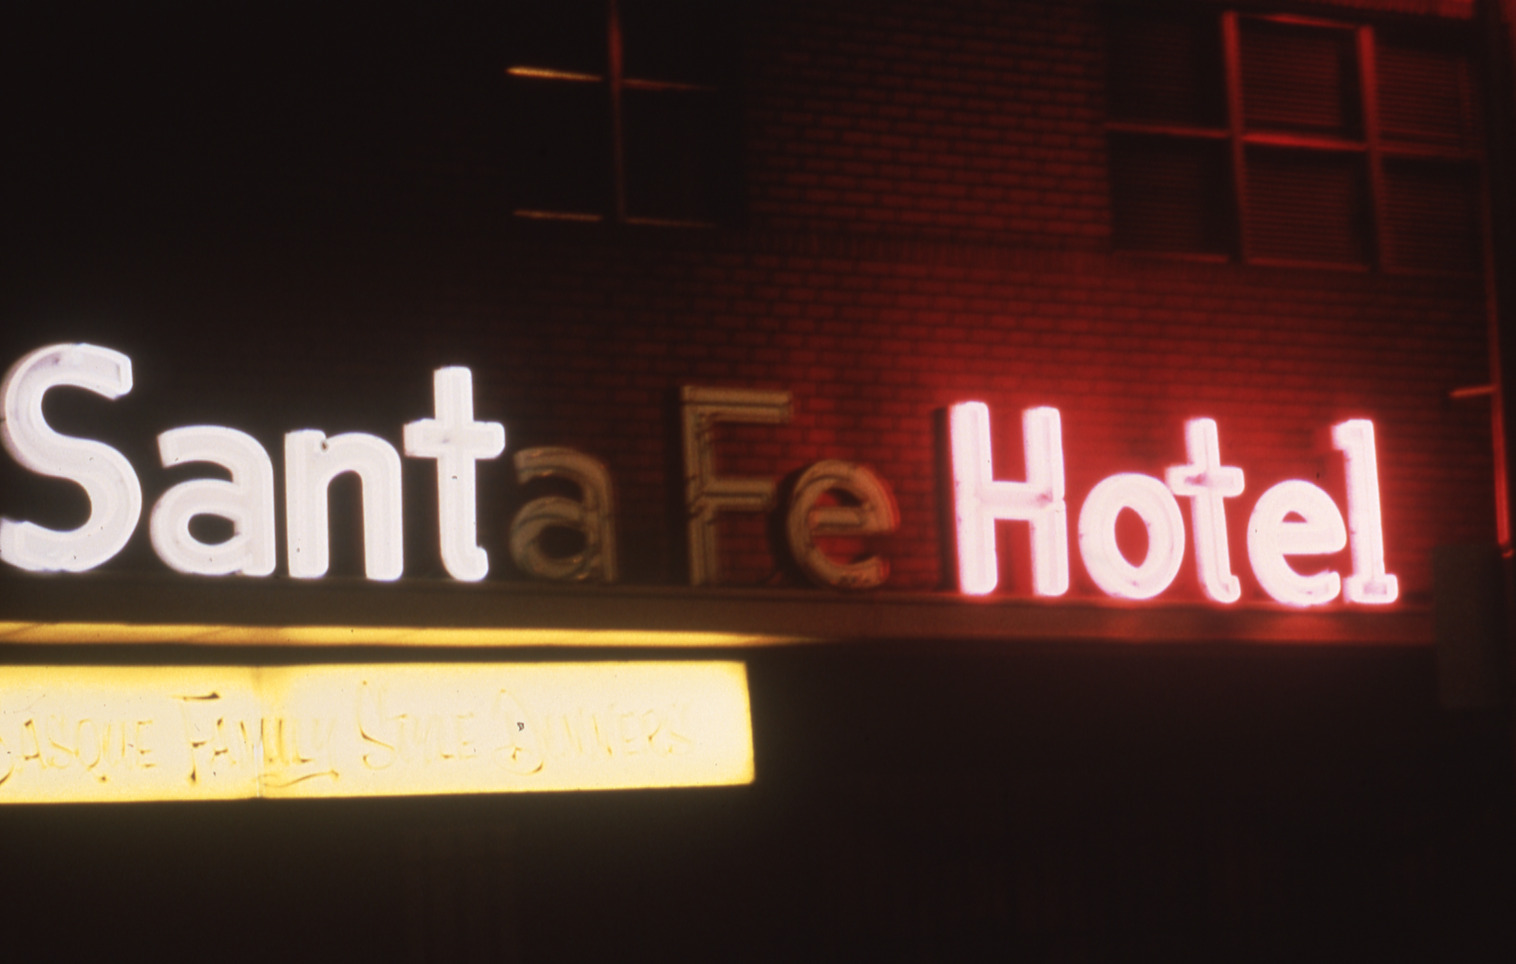 Santa Fe Hotel wall signs, Reno, Nevada: photographic print